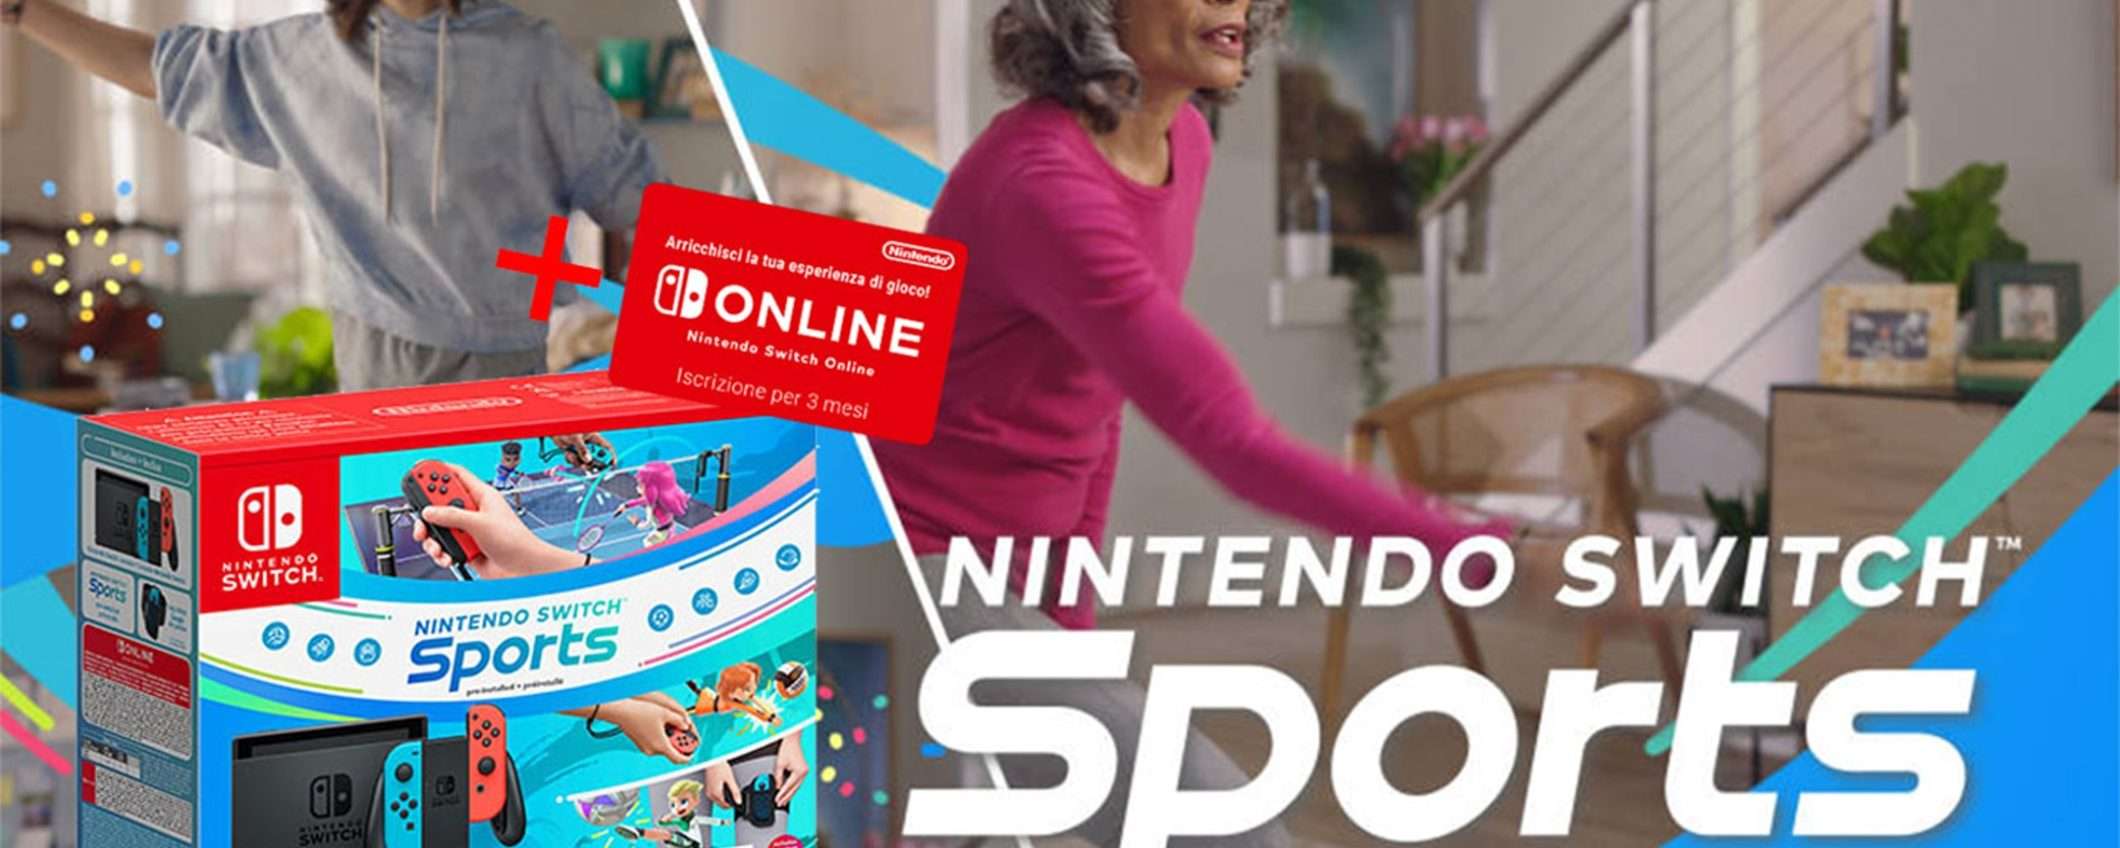 Nintendo Switch + Switch Sports: pochissime scorte su eBay a un prezzo PAZZESCO!